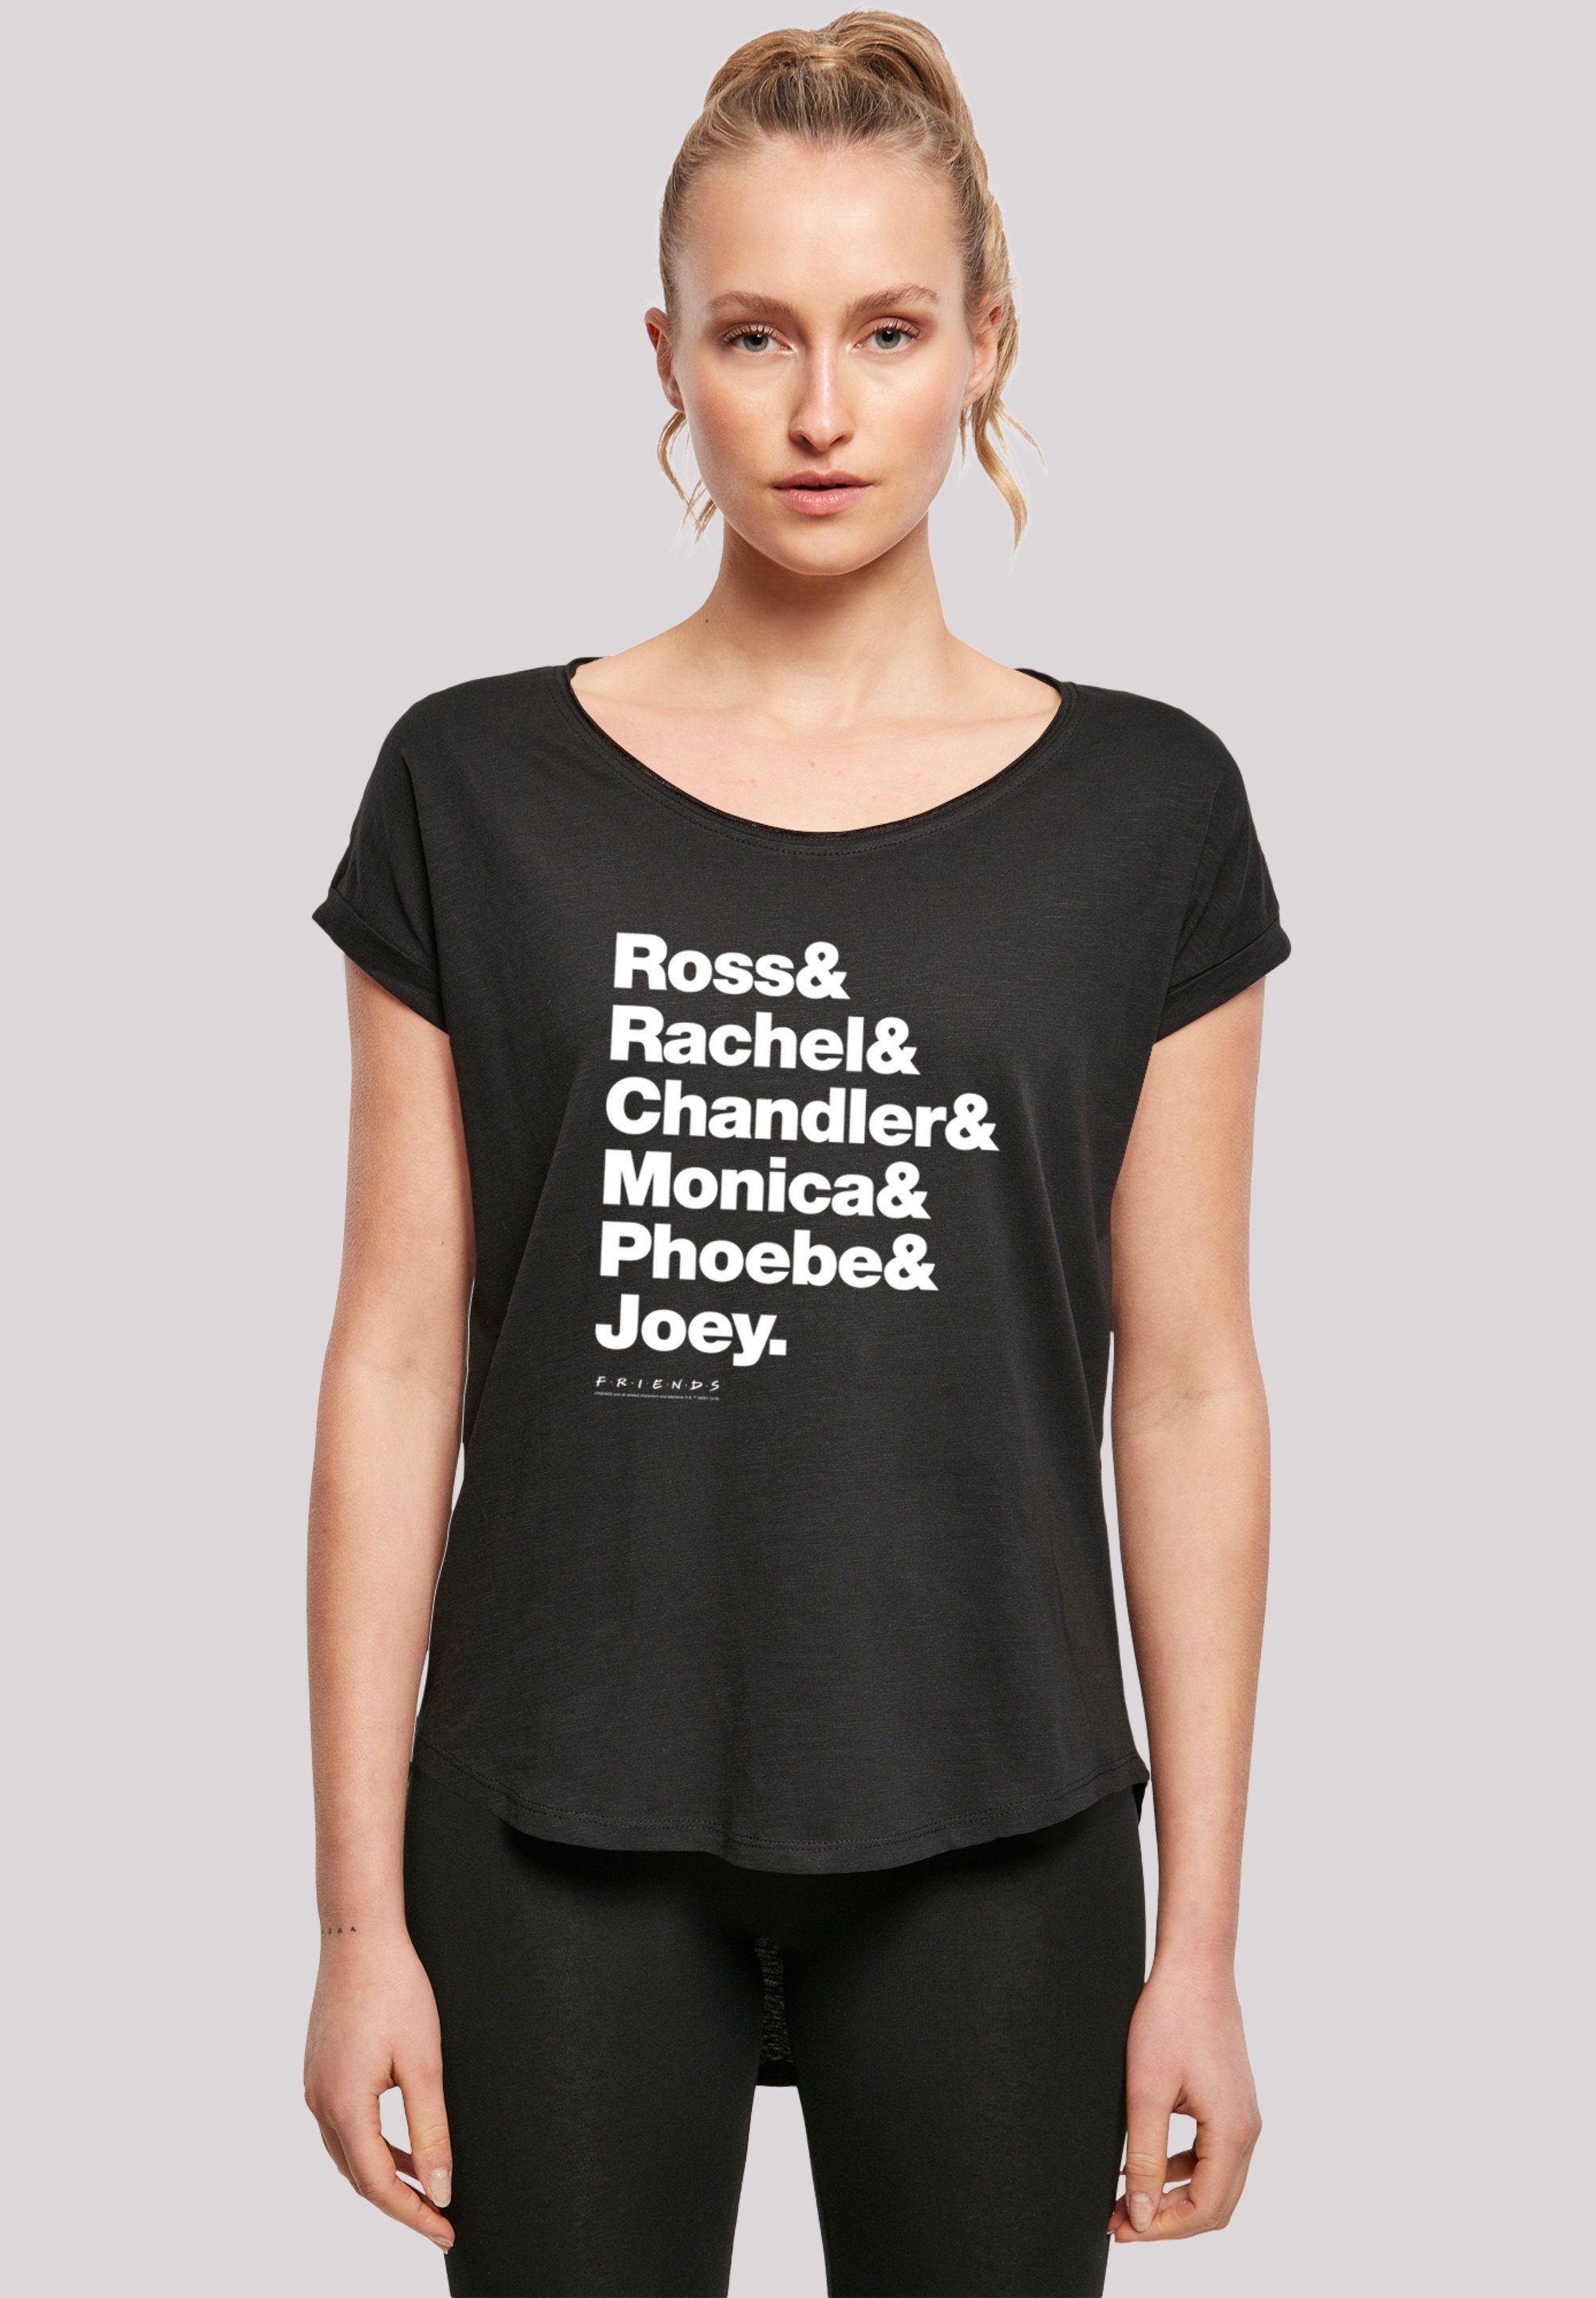 T-Shirt & Chandler Joey F4NT4STIC & FRIENDS Print & Phoebe Rachel & & Monica Ross